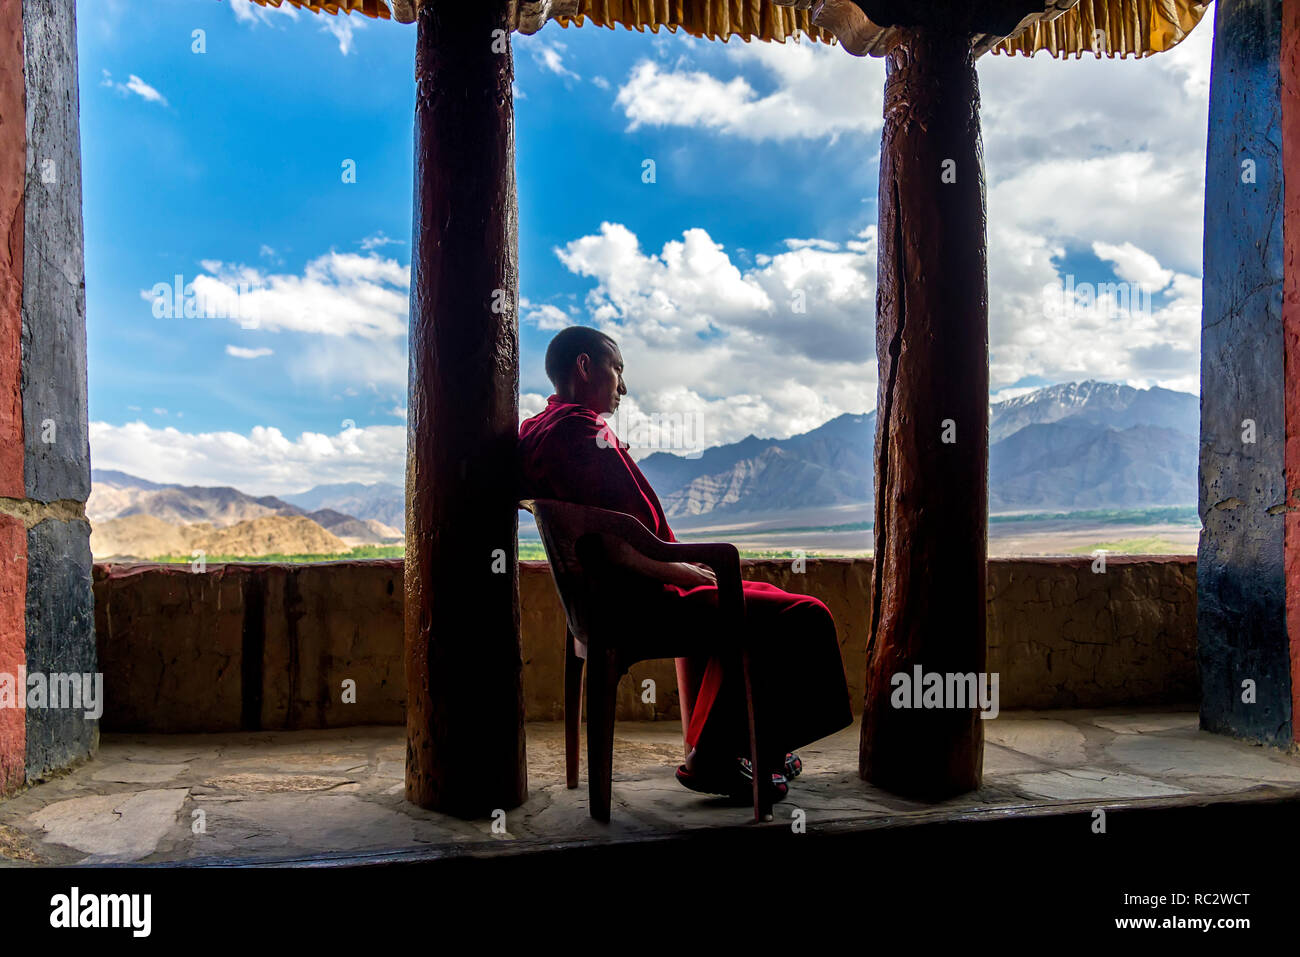 Thikse, Indien - August 16, 2015: Ein buddhistischer Mönch mit rotem Gewand auf einem Stuhl ruht in Thikse Gompa (Kloster) Stockfoto